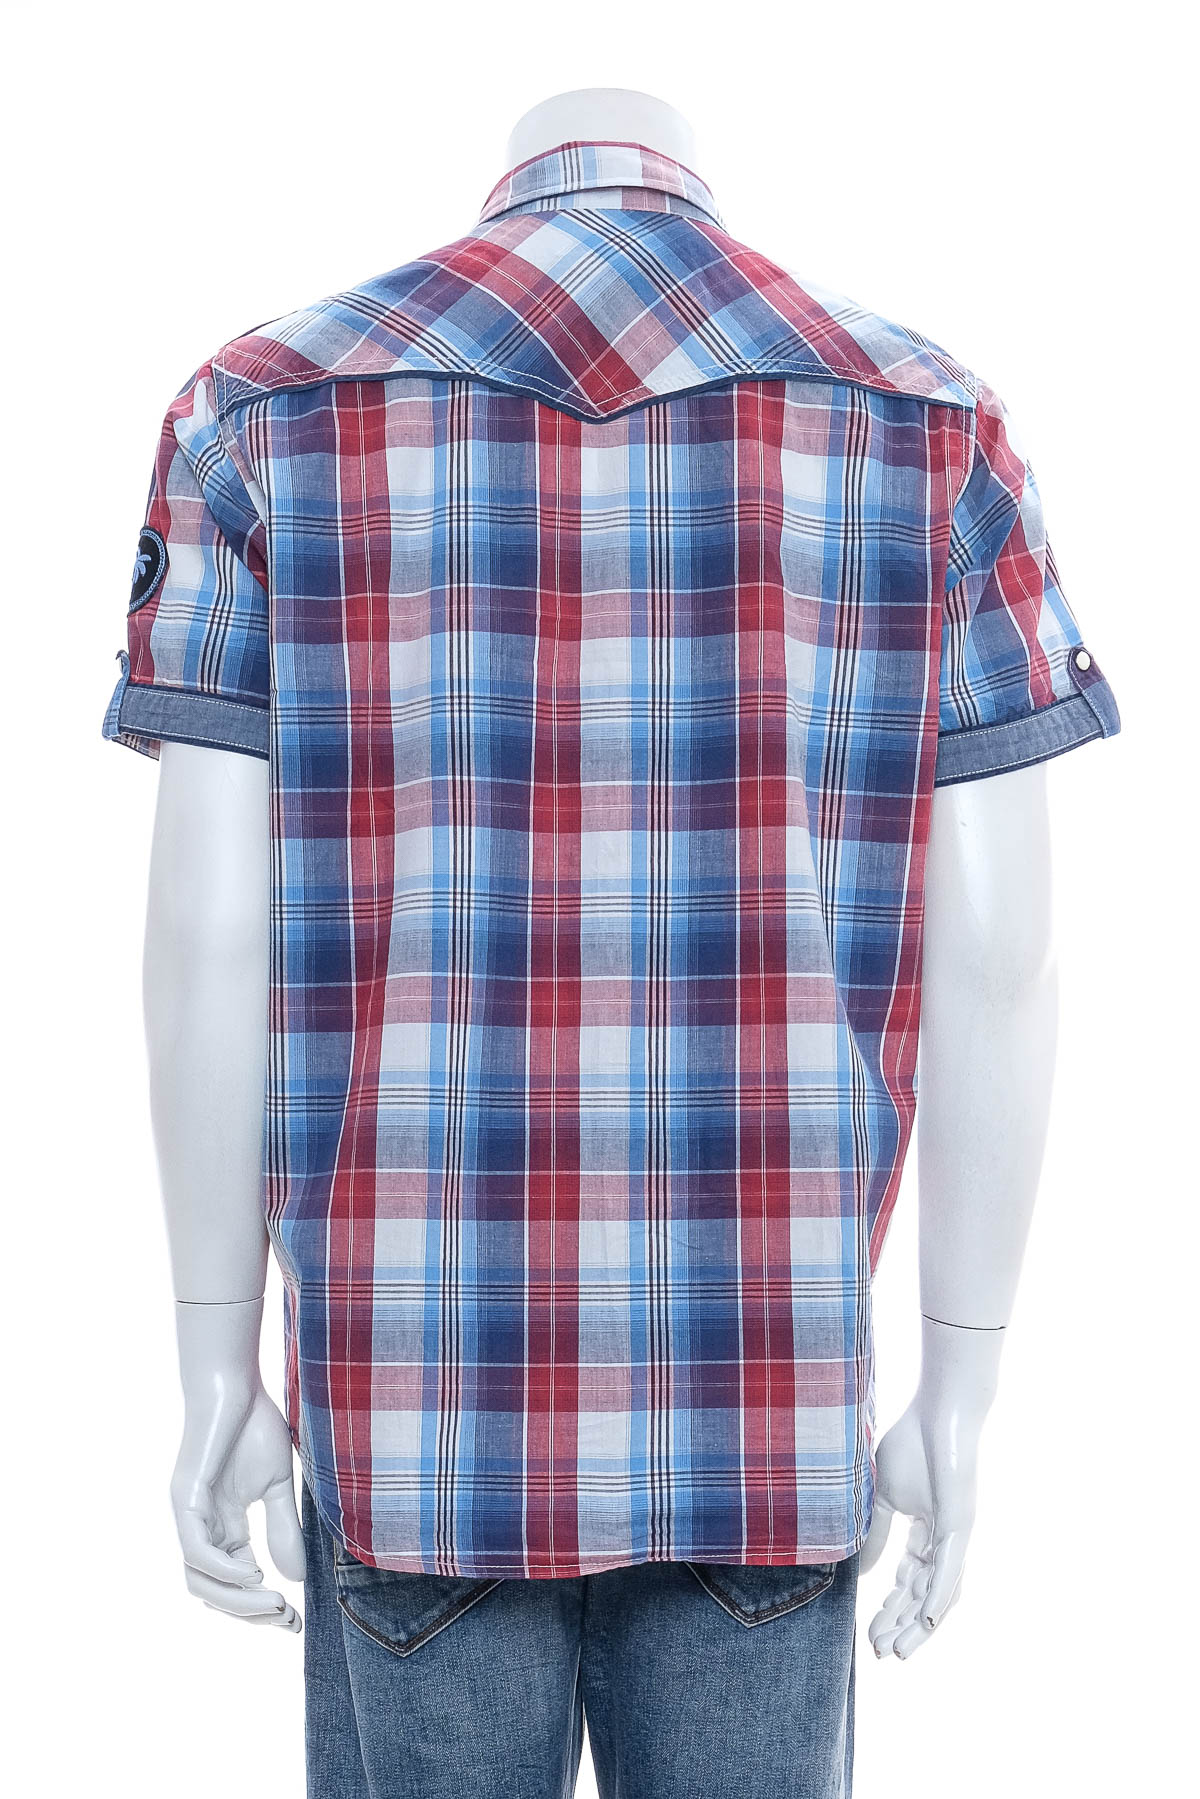 Ανδρικό πουκάμισο - Identic - 1